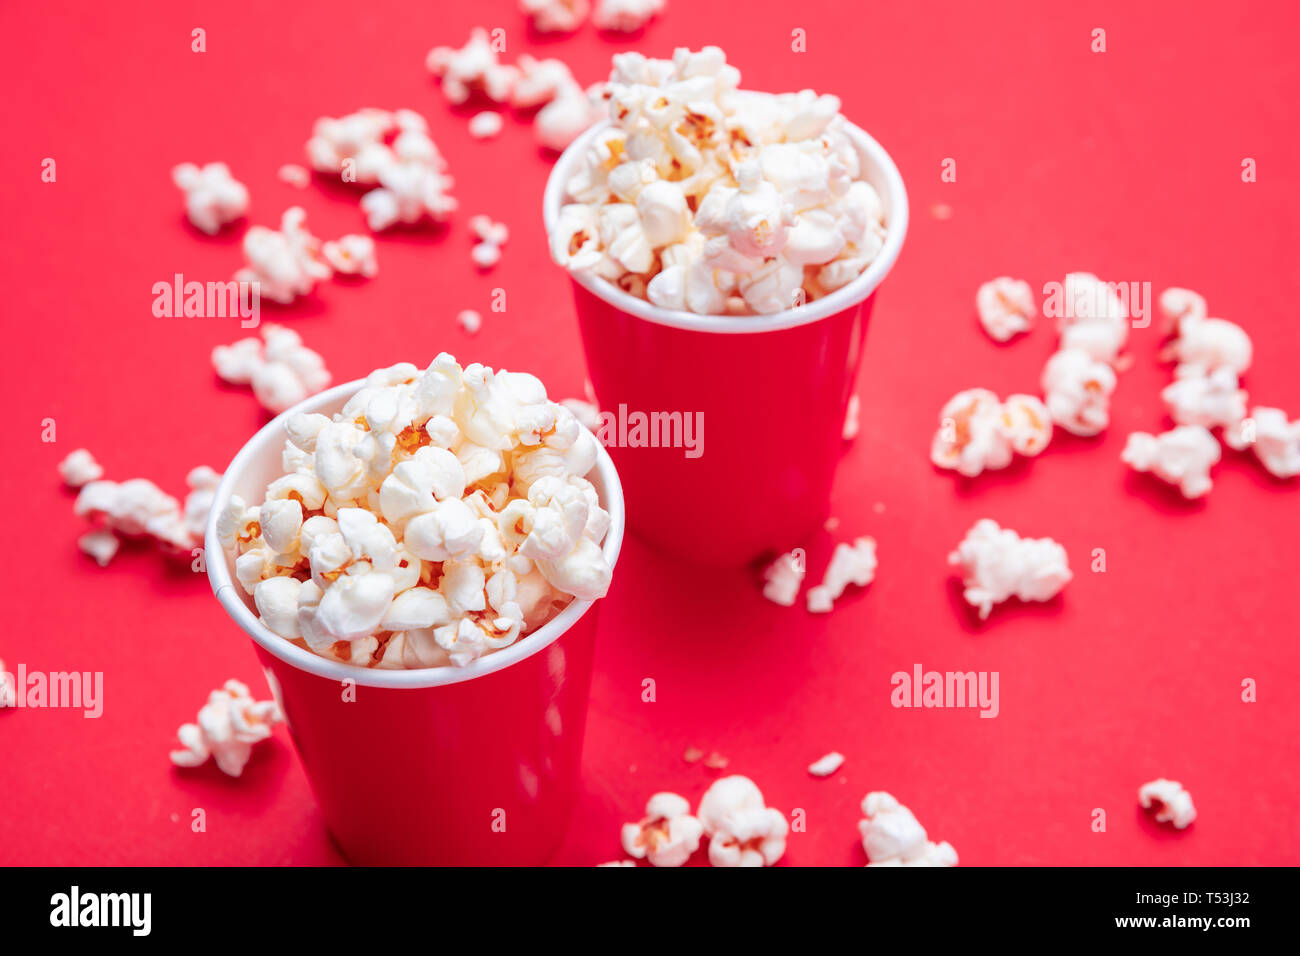 Frische salzige Popcorn in zwei roten Karton Container, rote Farbe Hintergrund, Detailansicht Stockfoto